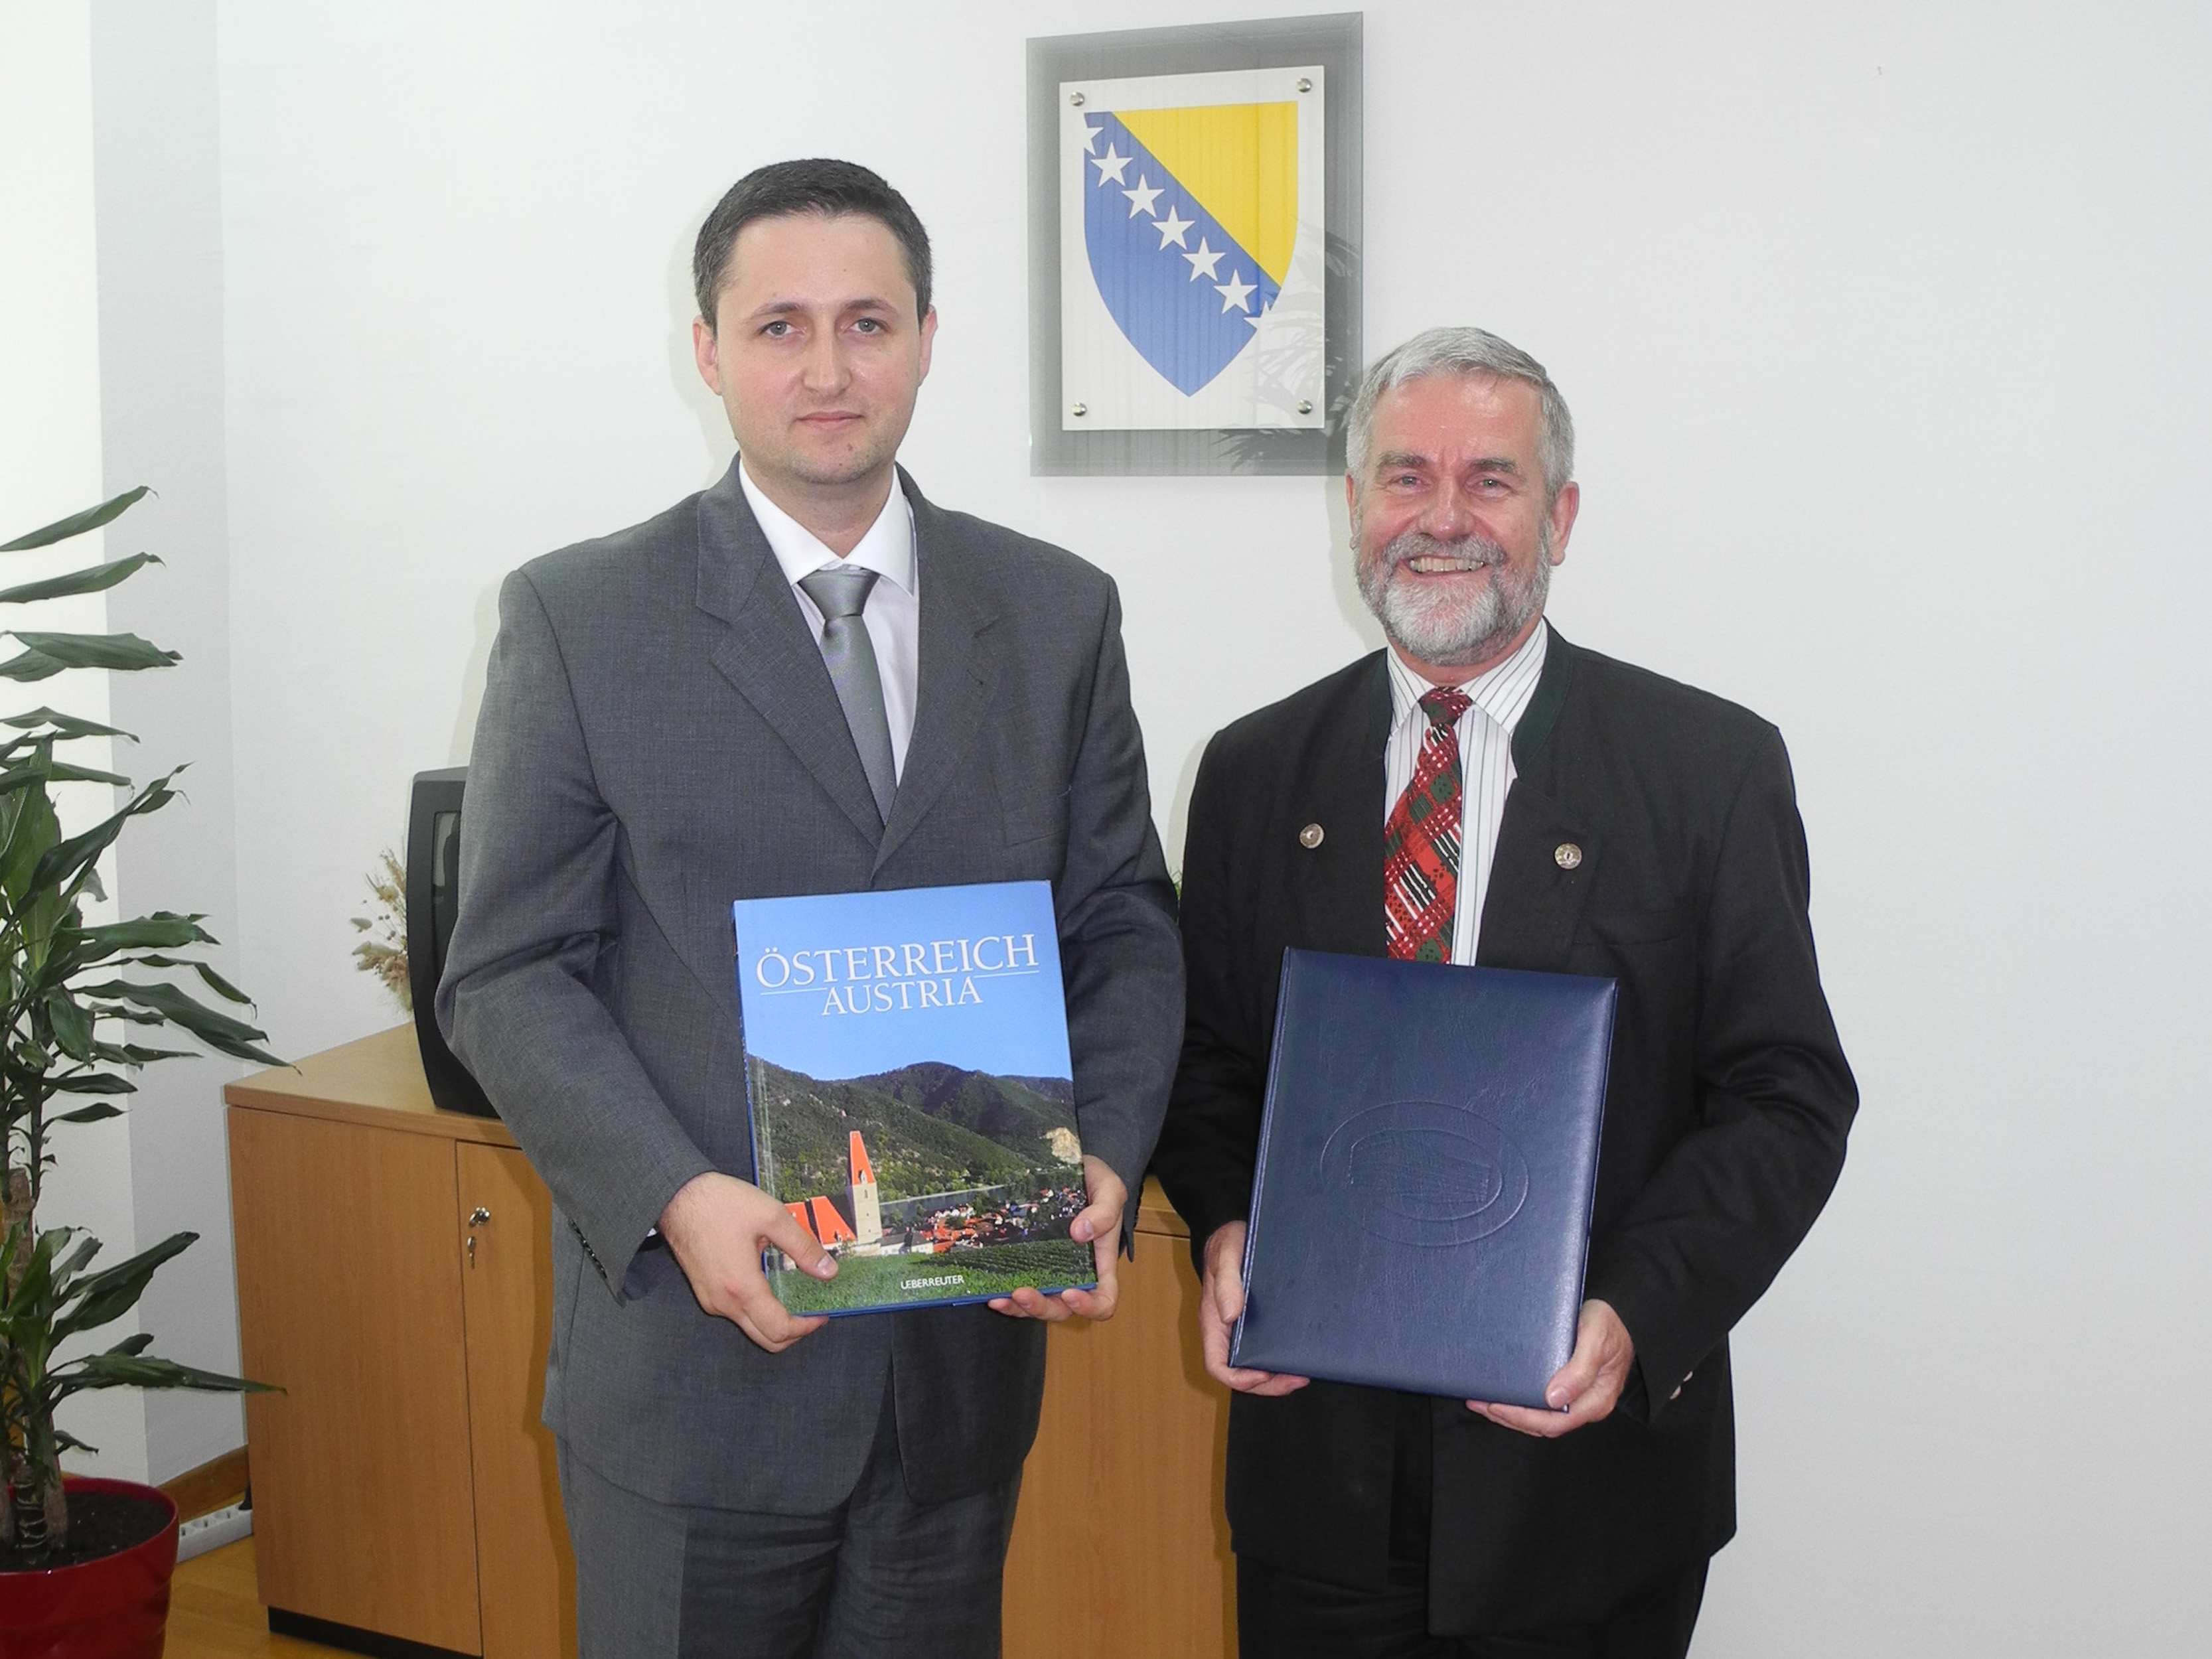 Susret predsjedavajućeg Predstavničkog doma, dr. Denisa Bećirovića s ambasadorom R Austrije
	

